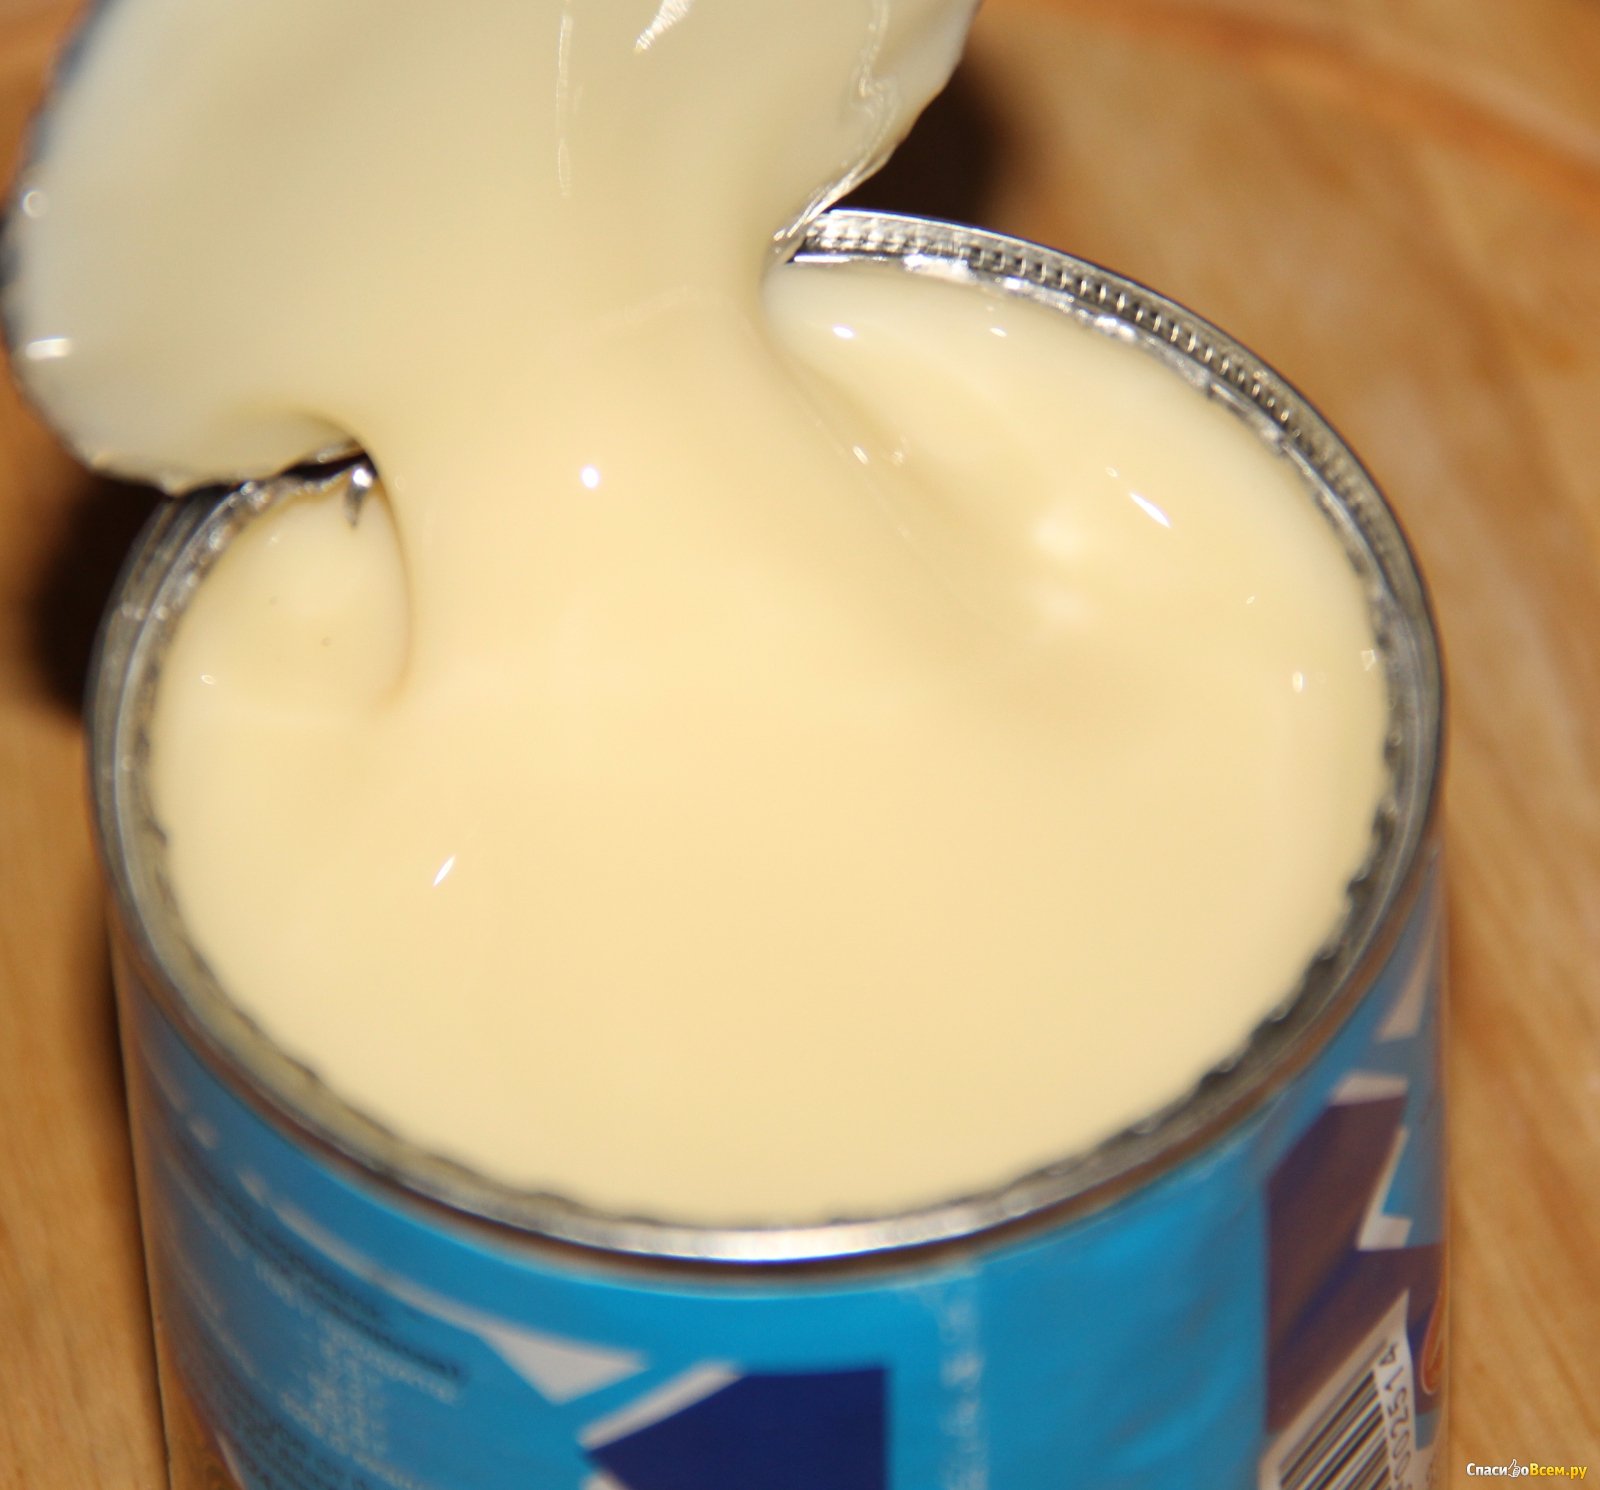 37% образцов сгущенного молока в России оказались подделкой